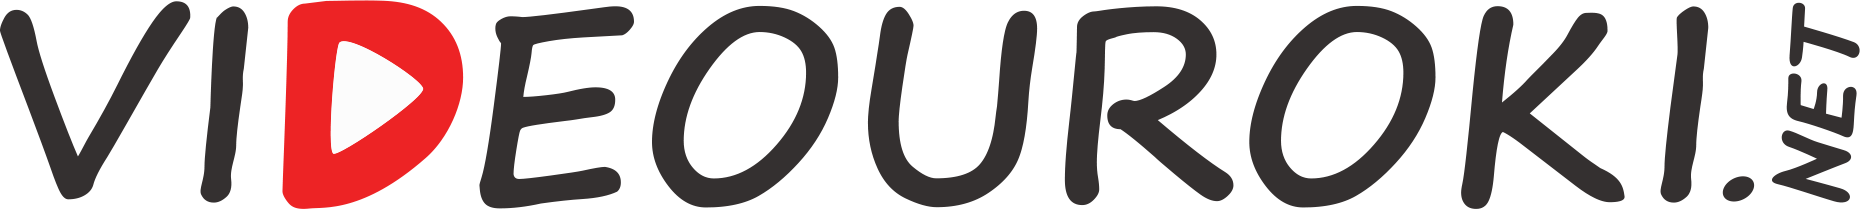 http:///img/logo-videouroki.png